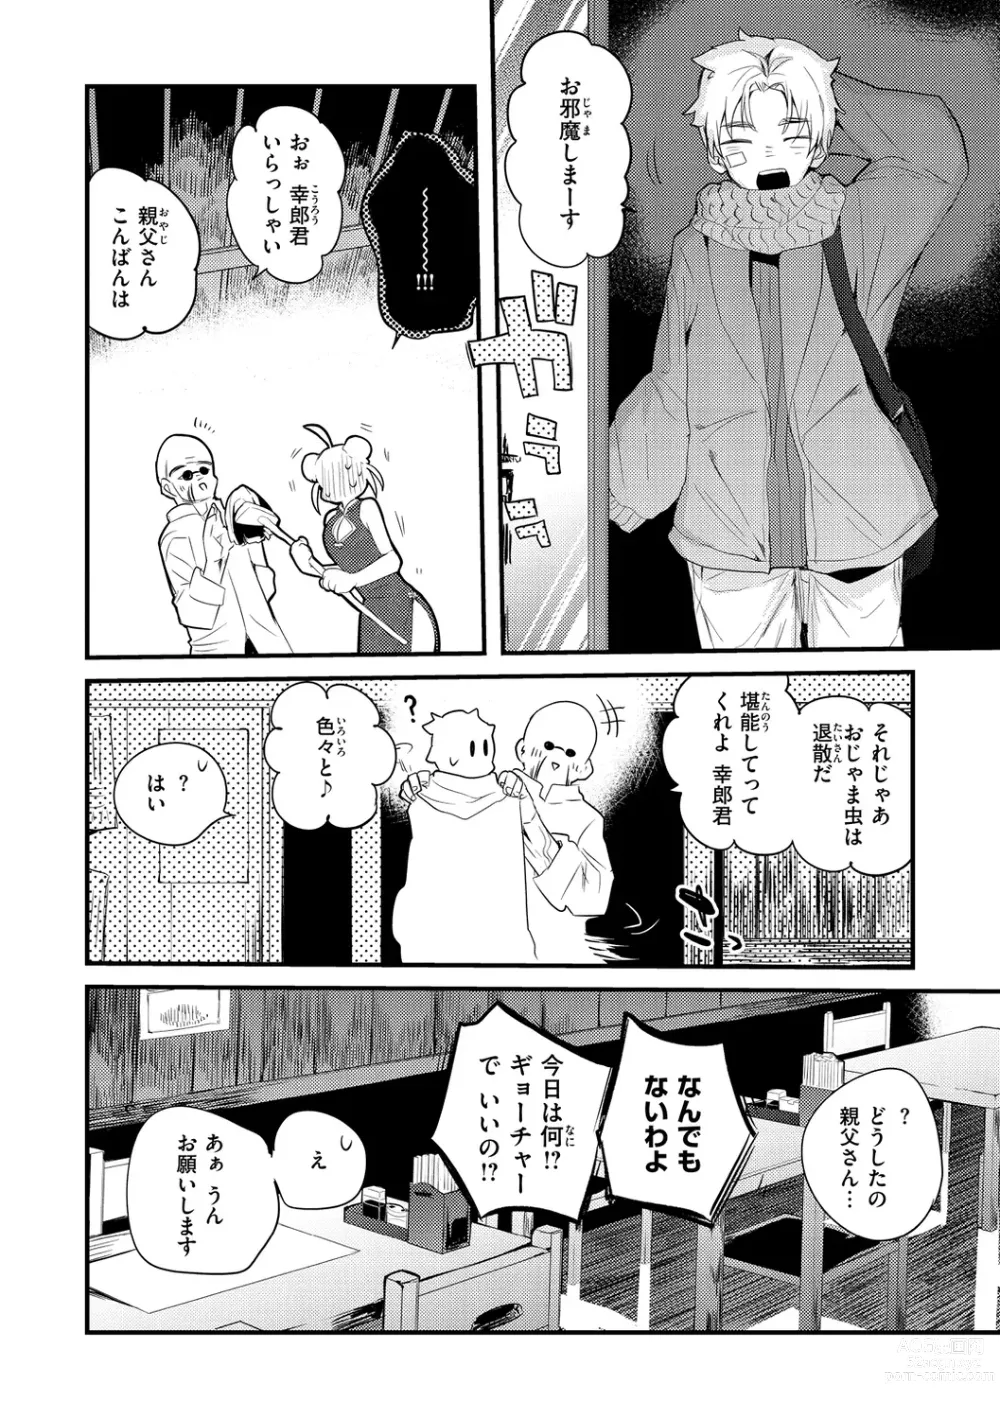 Page 8 of manga New Tawawa Paradise